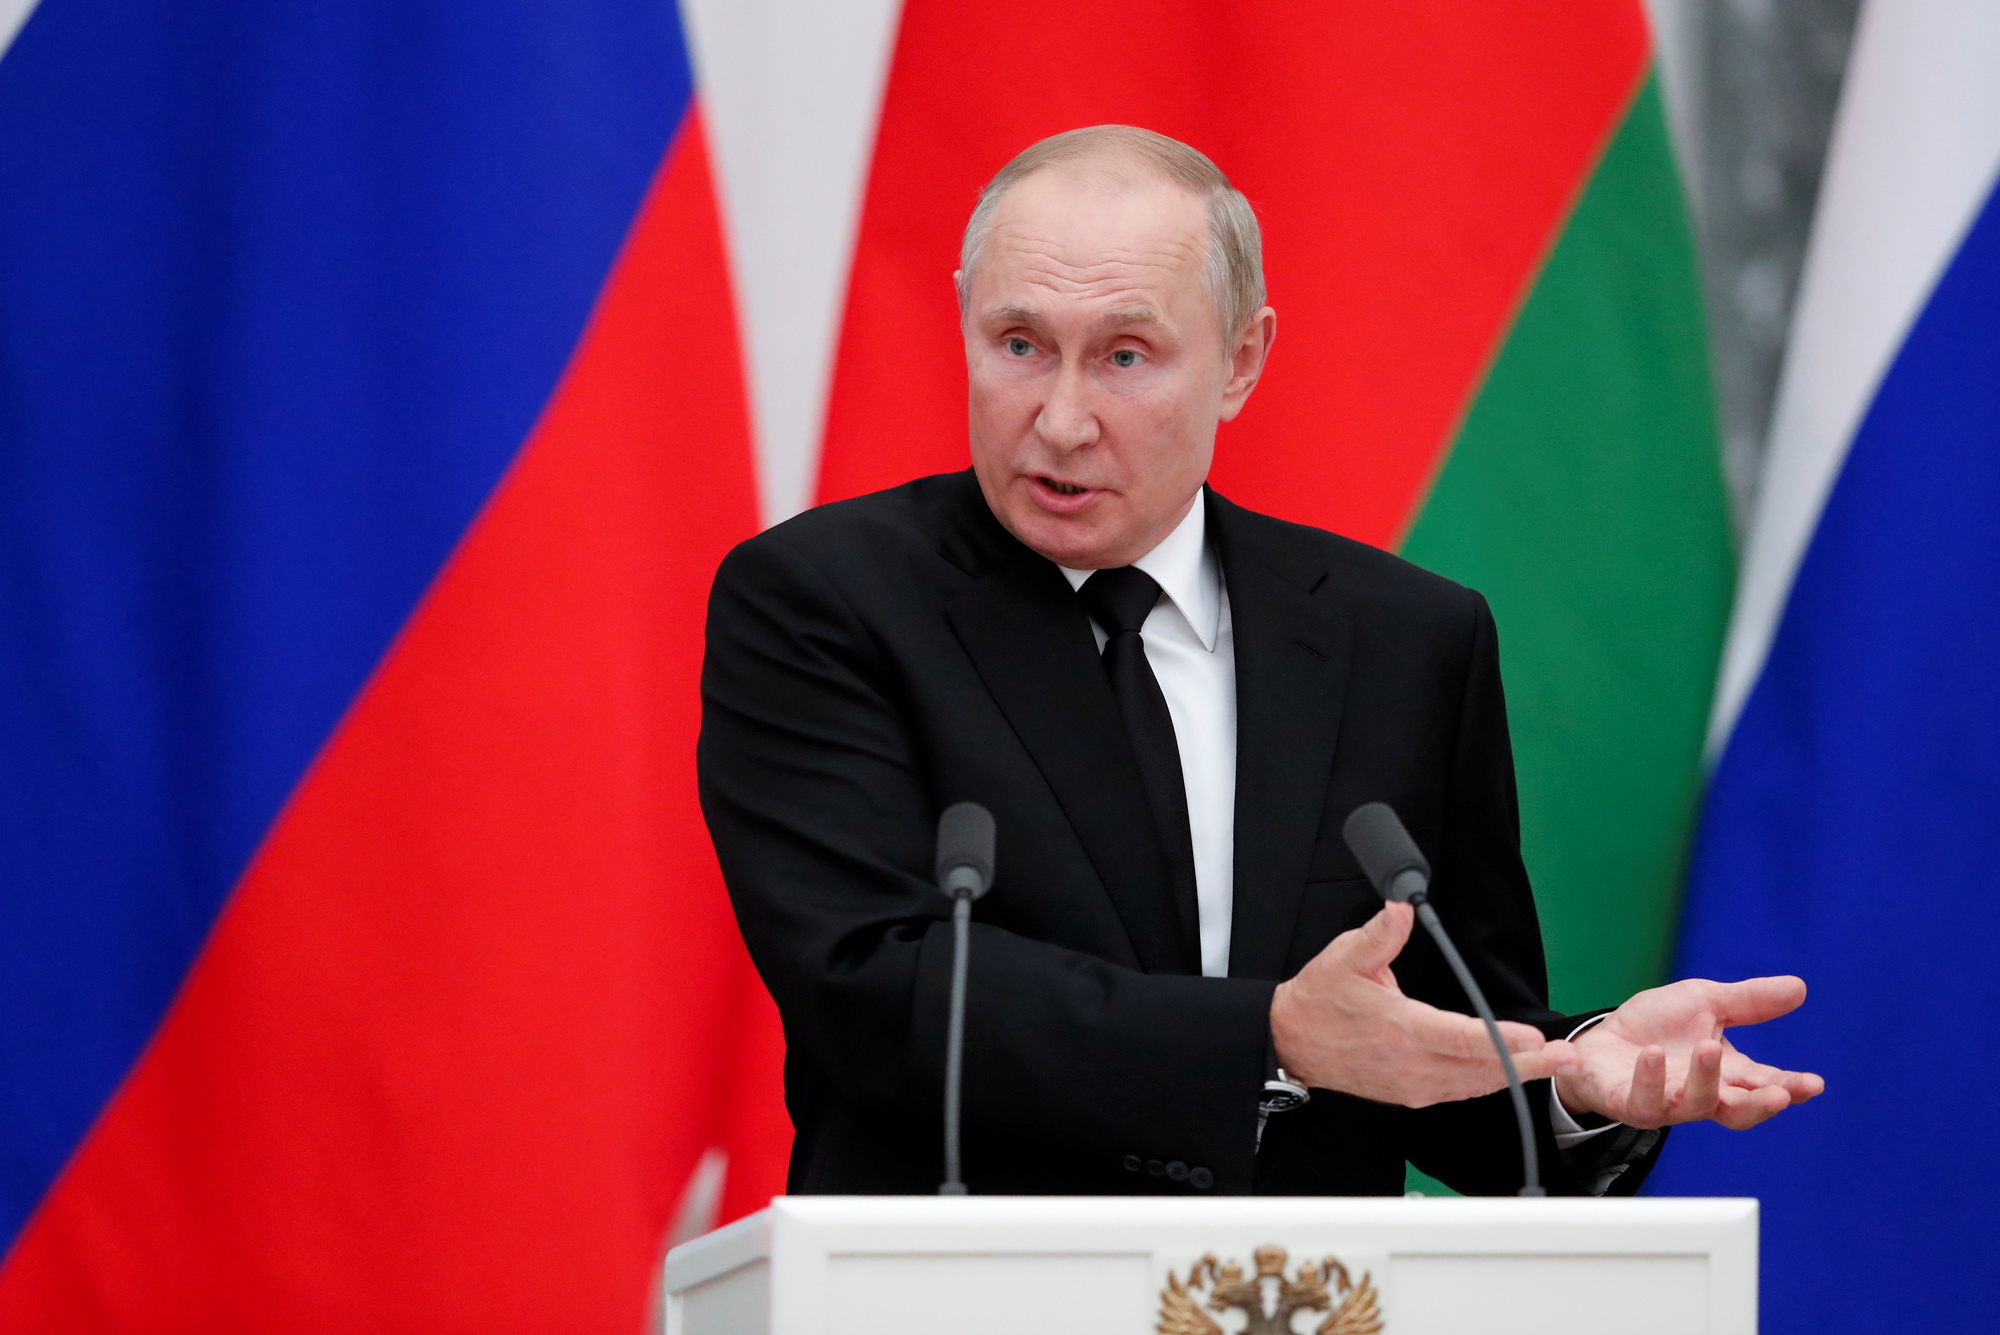 Цена на газ, единая валюта и кредит — о чем говорили Путин и Лукашенко